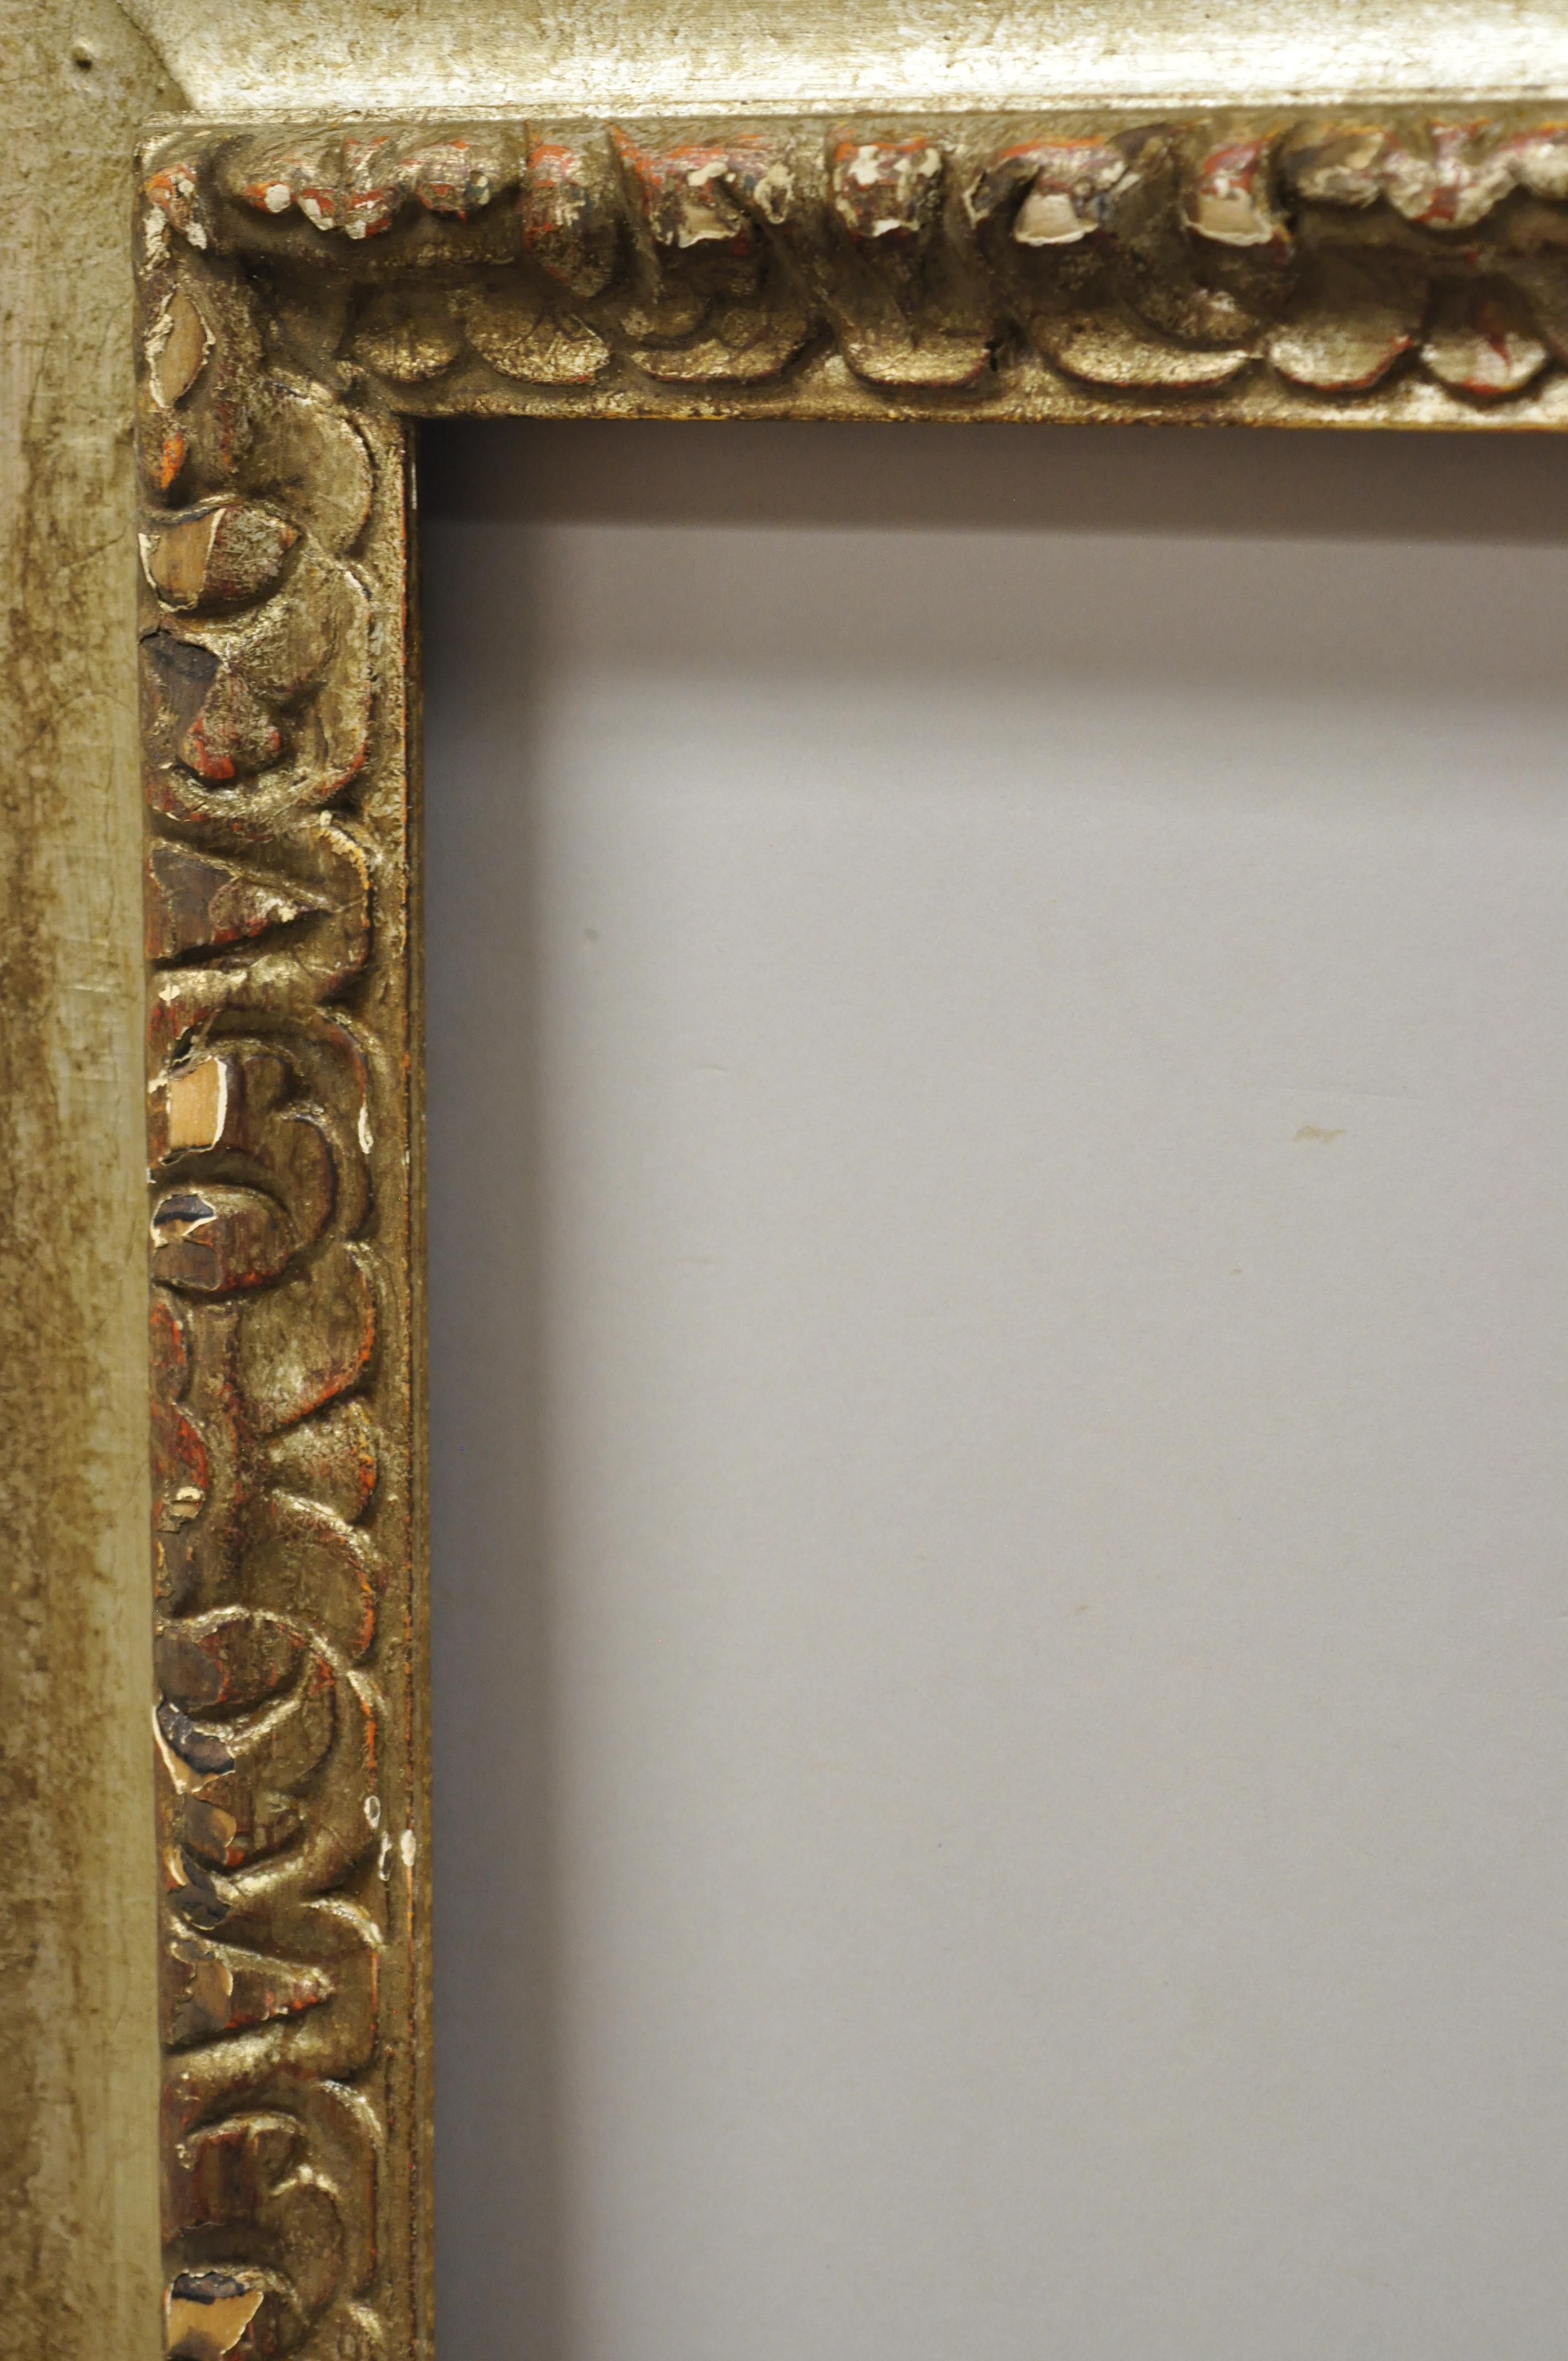 Antike italienische polychrome Paket vergoldet geschnitztem Holz Florentine Gemälde Rahmen. Das Objekt zeichnet sich durch eine beschädigte, polychrom bemalte Gold-/Silbervergoldung, einen Massivholzrahmen, handgeschnitzte Details und ein